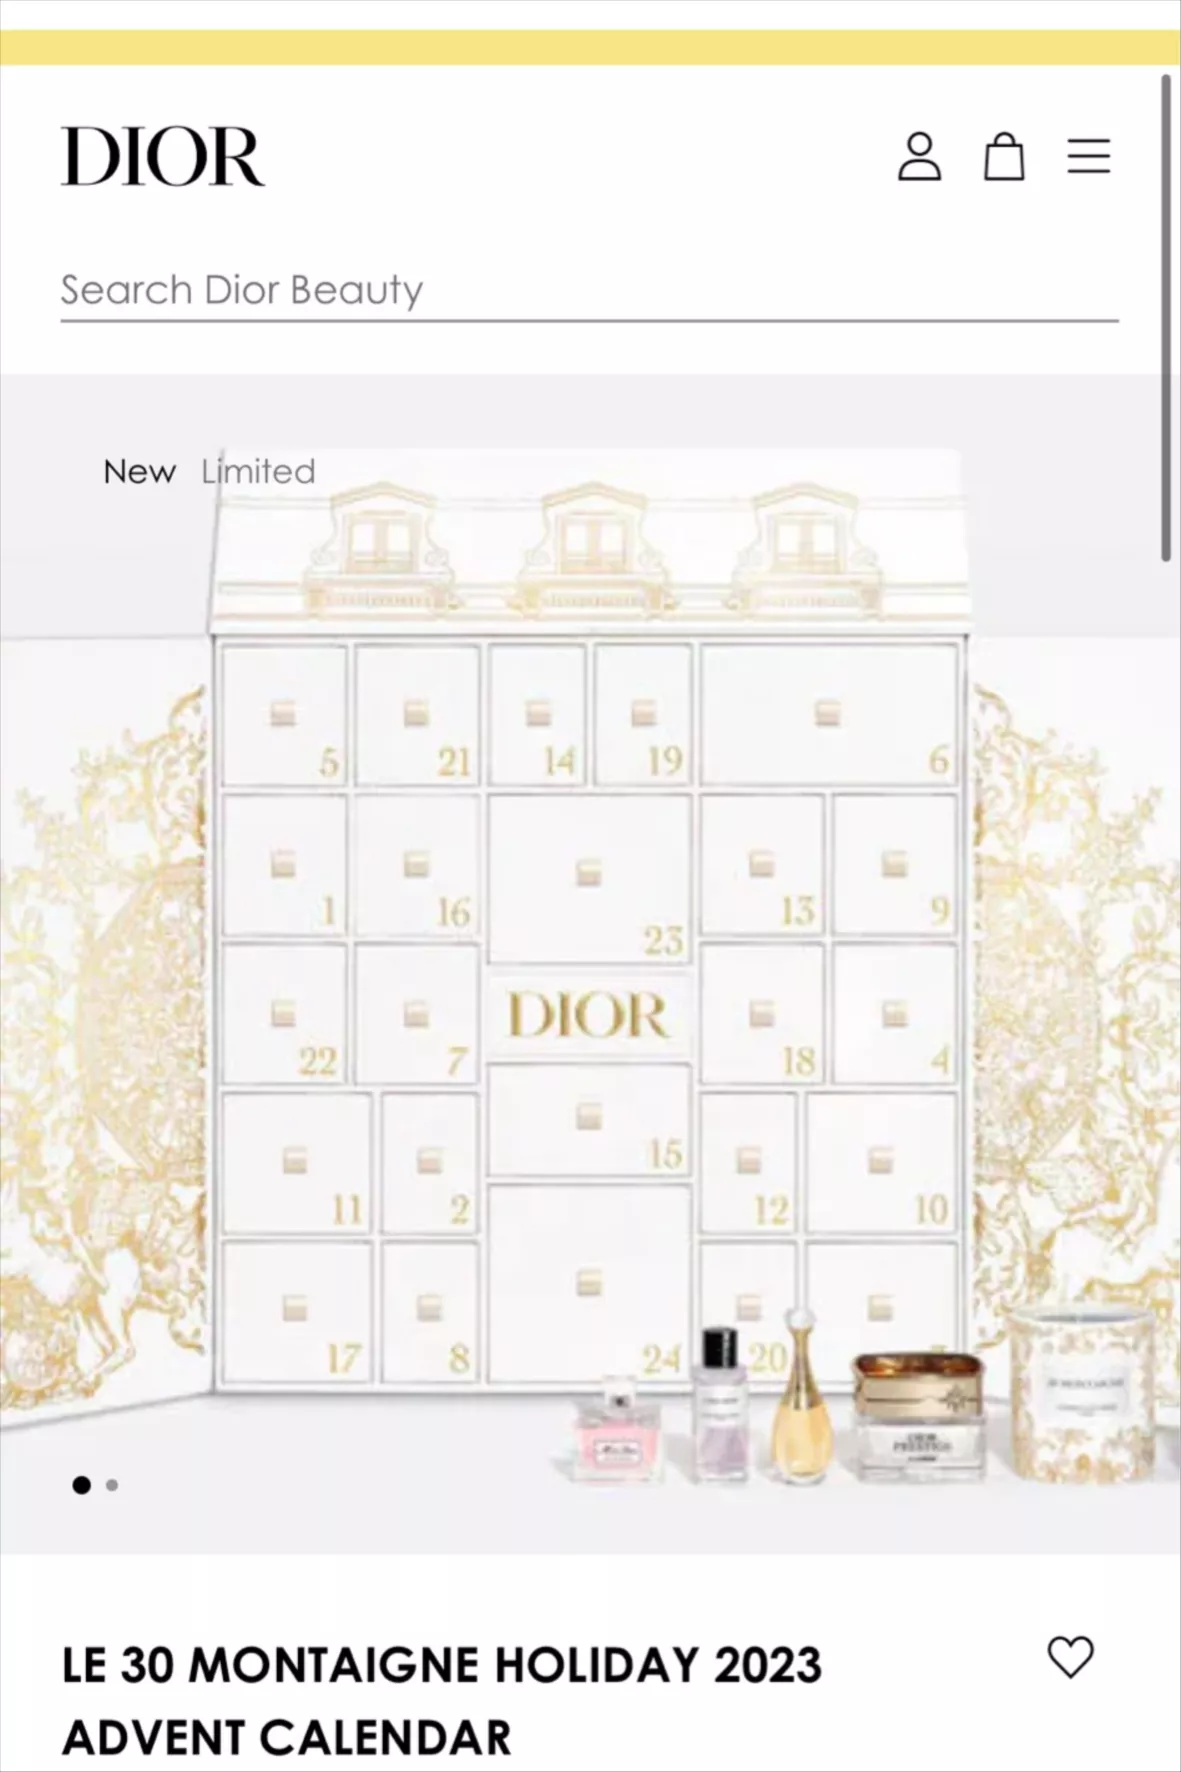 Dior 2020 Advent Calendar - Available Now!